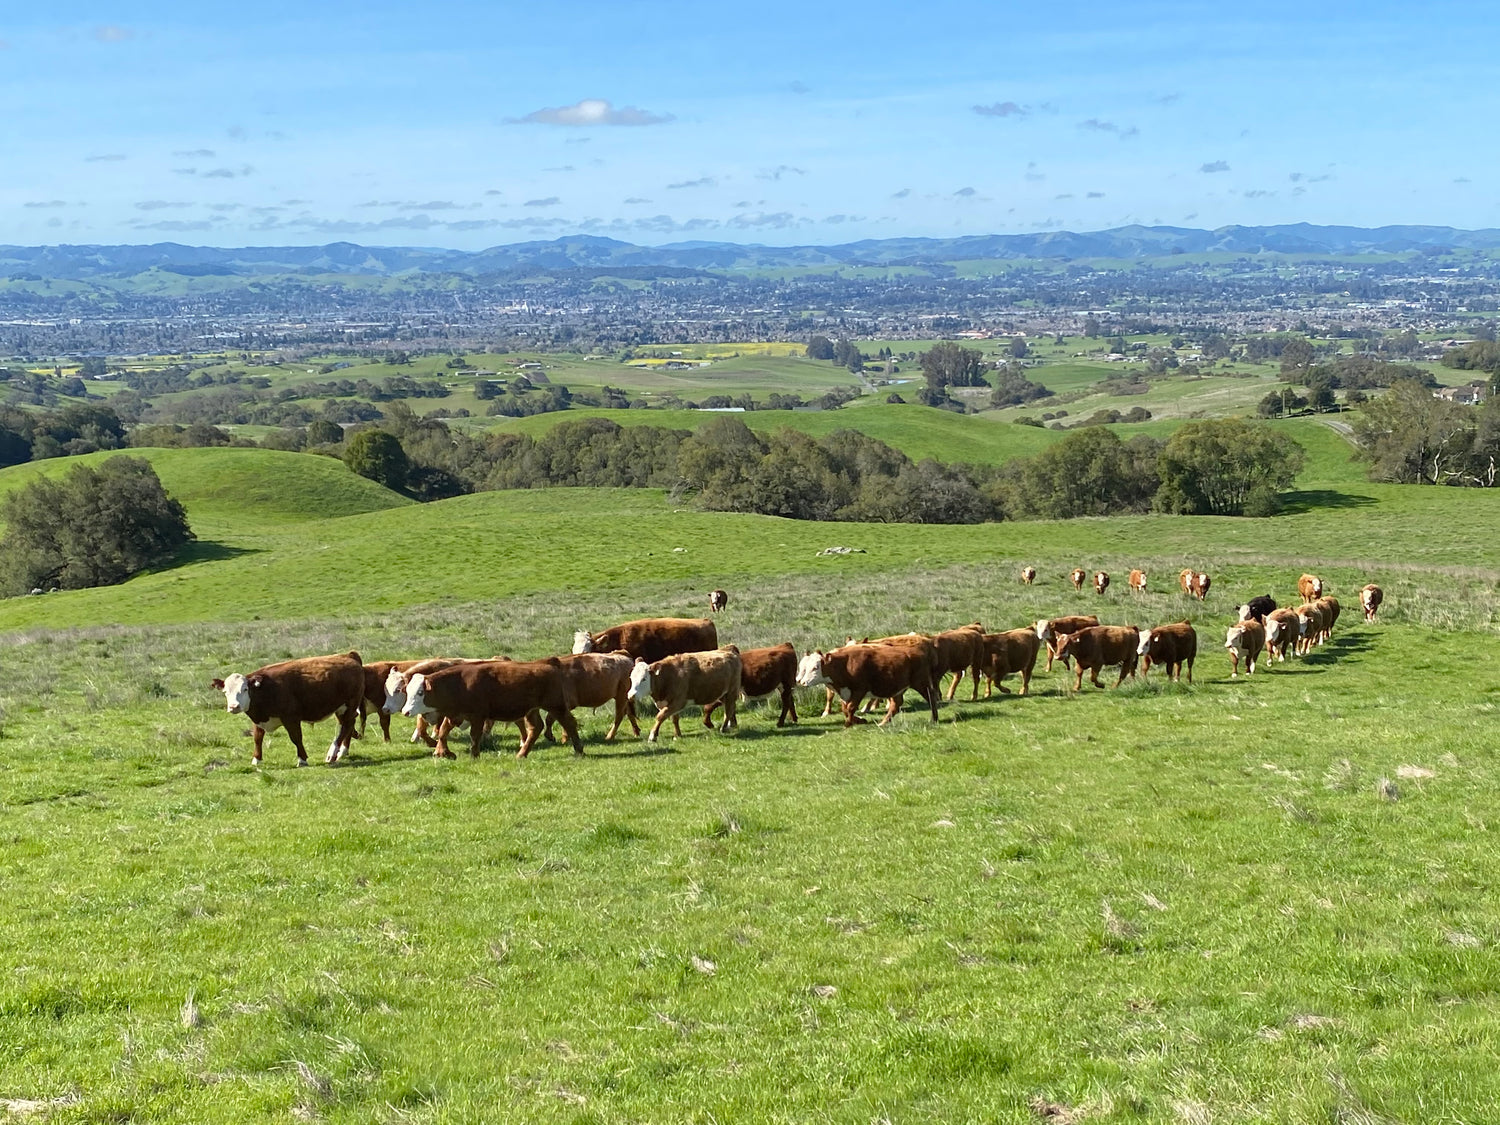 Group of steers walking across the field